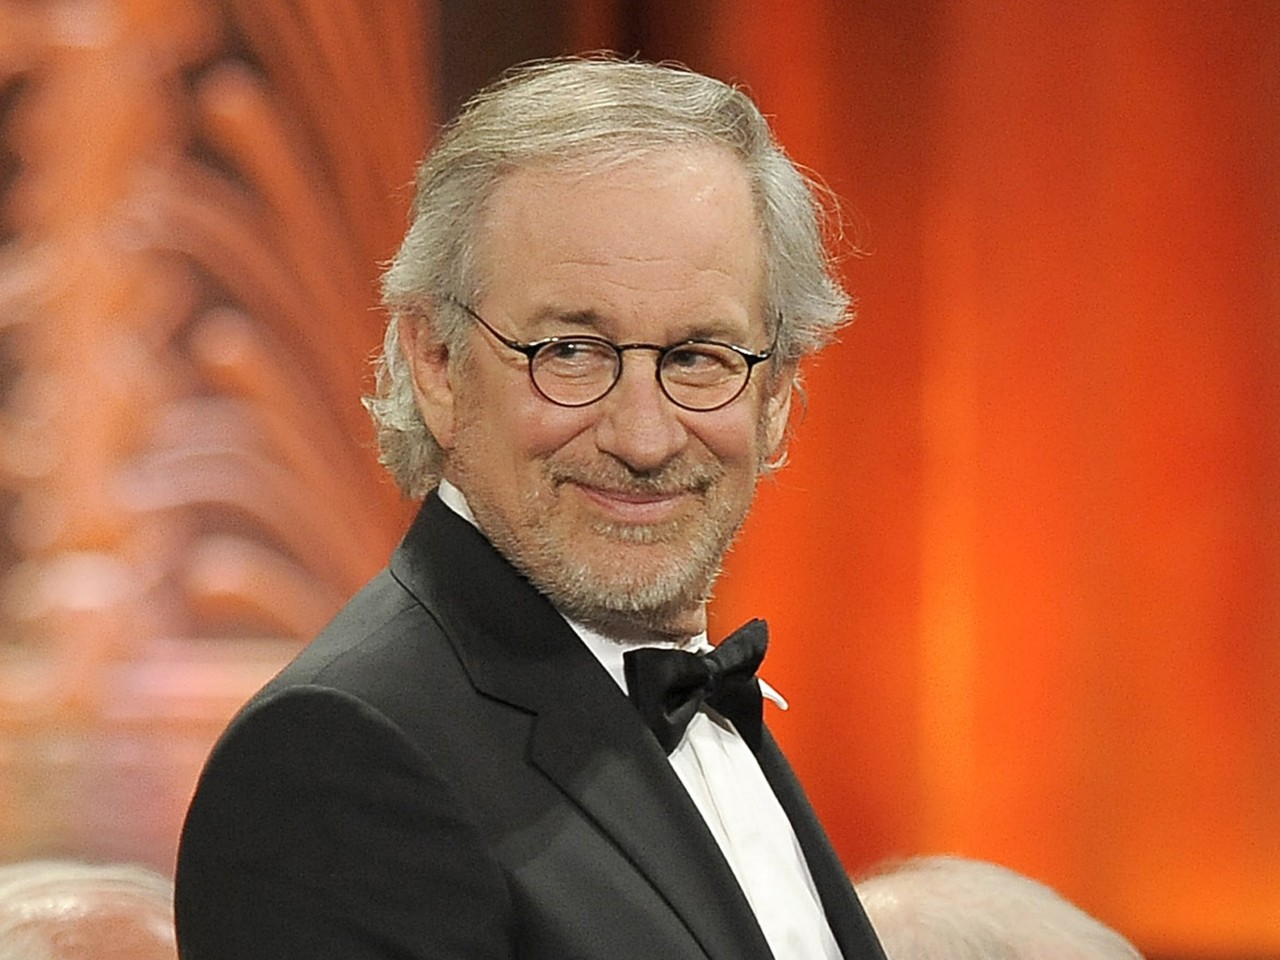 Steven Spielberg presidirá el jurado del Festival de Cannes 2013 | Centro Mujer